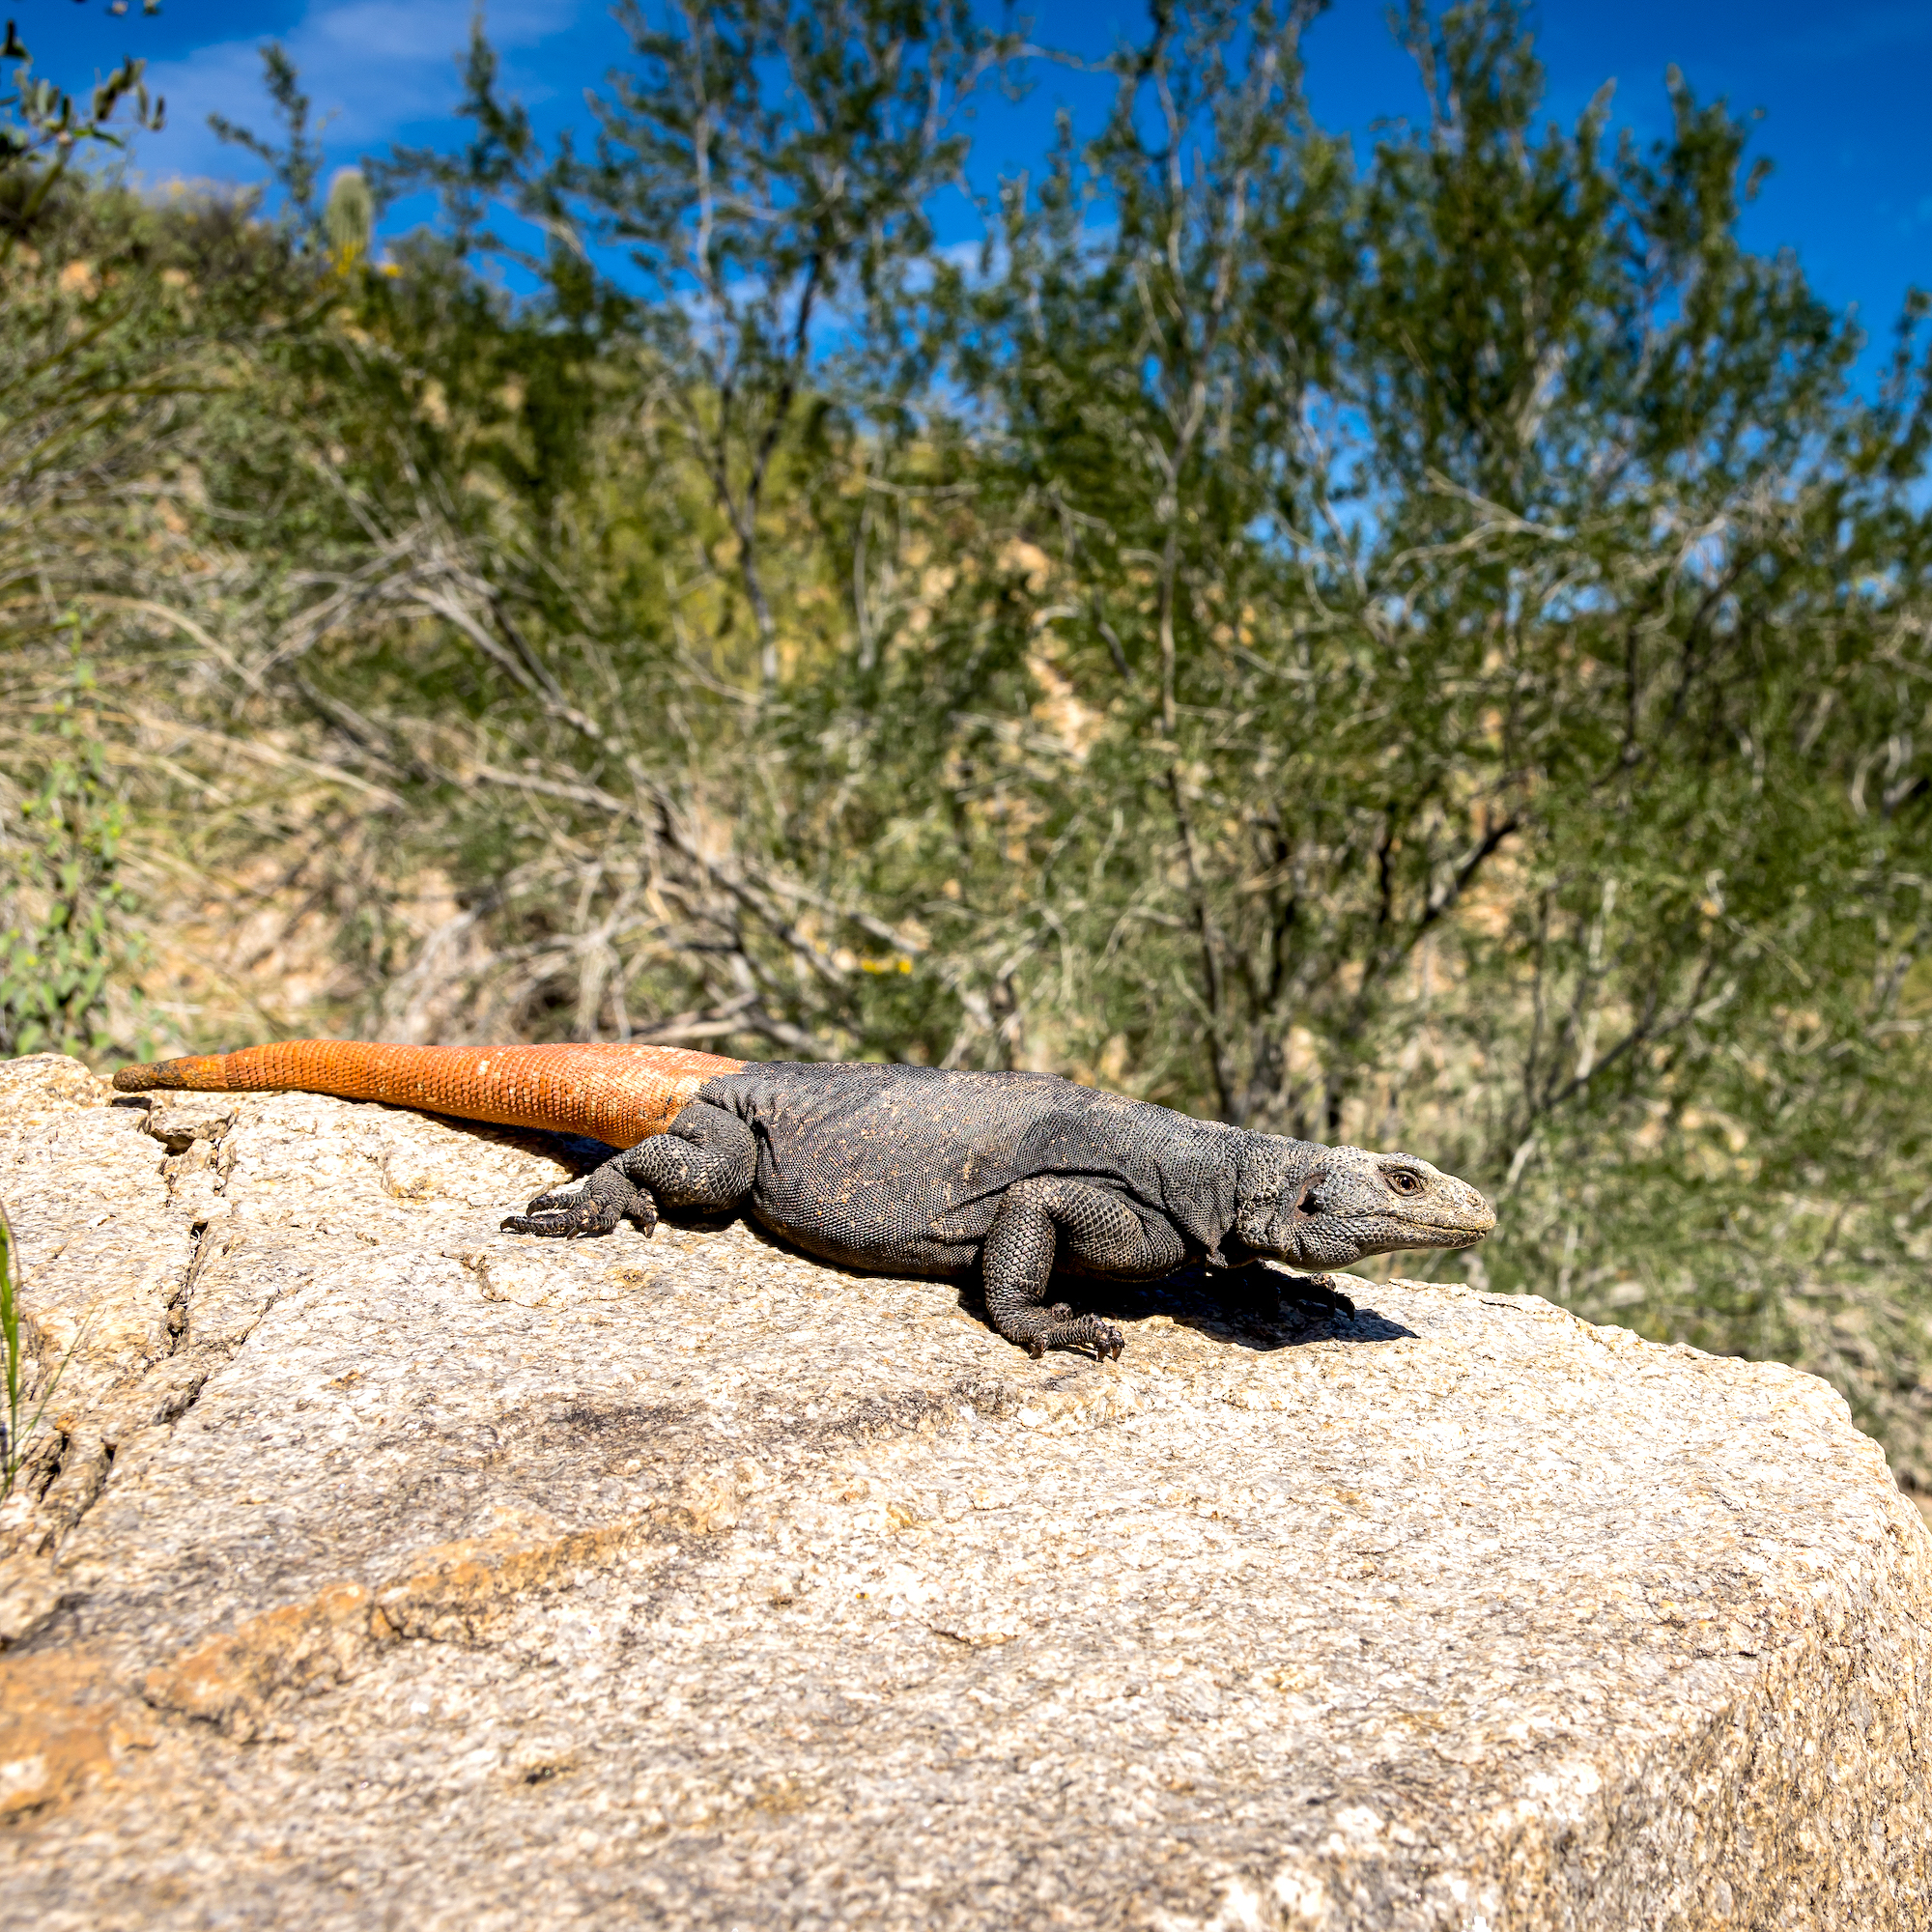 Le chuckwalla (Sauromalus ater) est un véritable champion du soleil. Il habite les déserts de Sonora et des Mojaves dans le sud-ouest des États-Unis et le nord-ouest du Mexique.